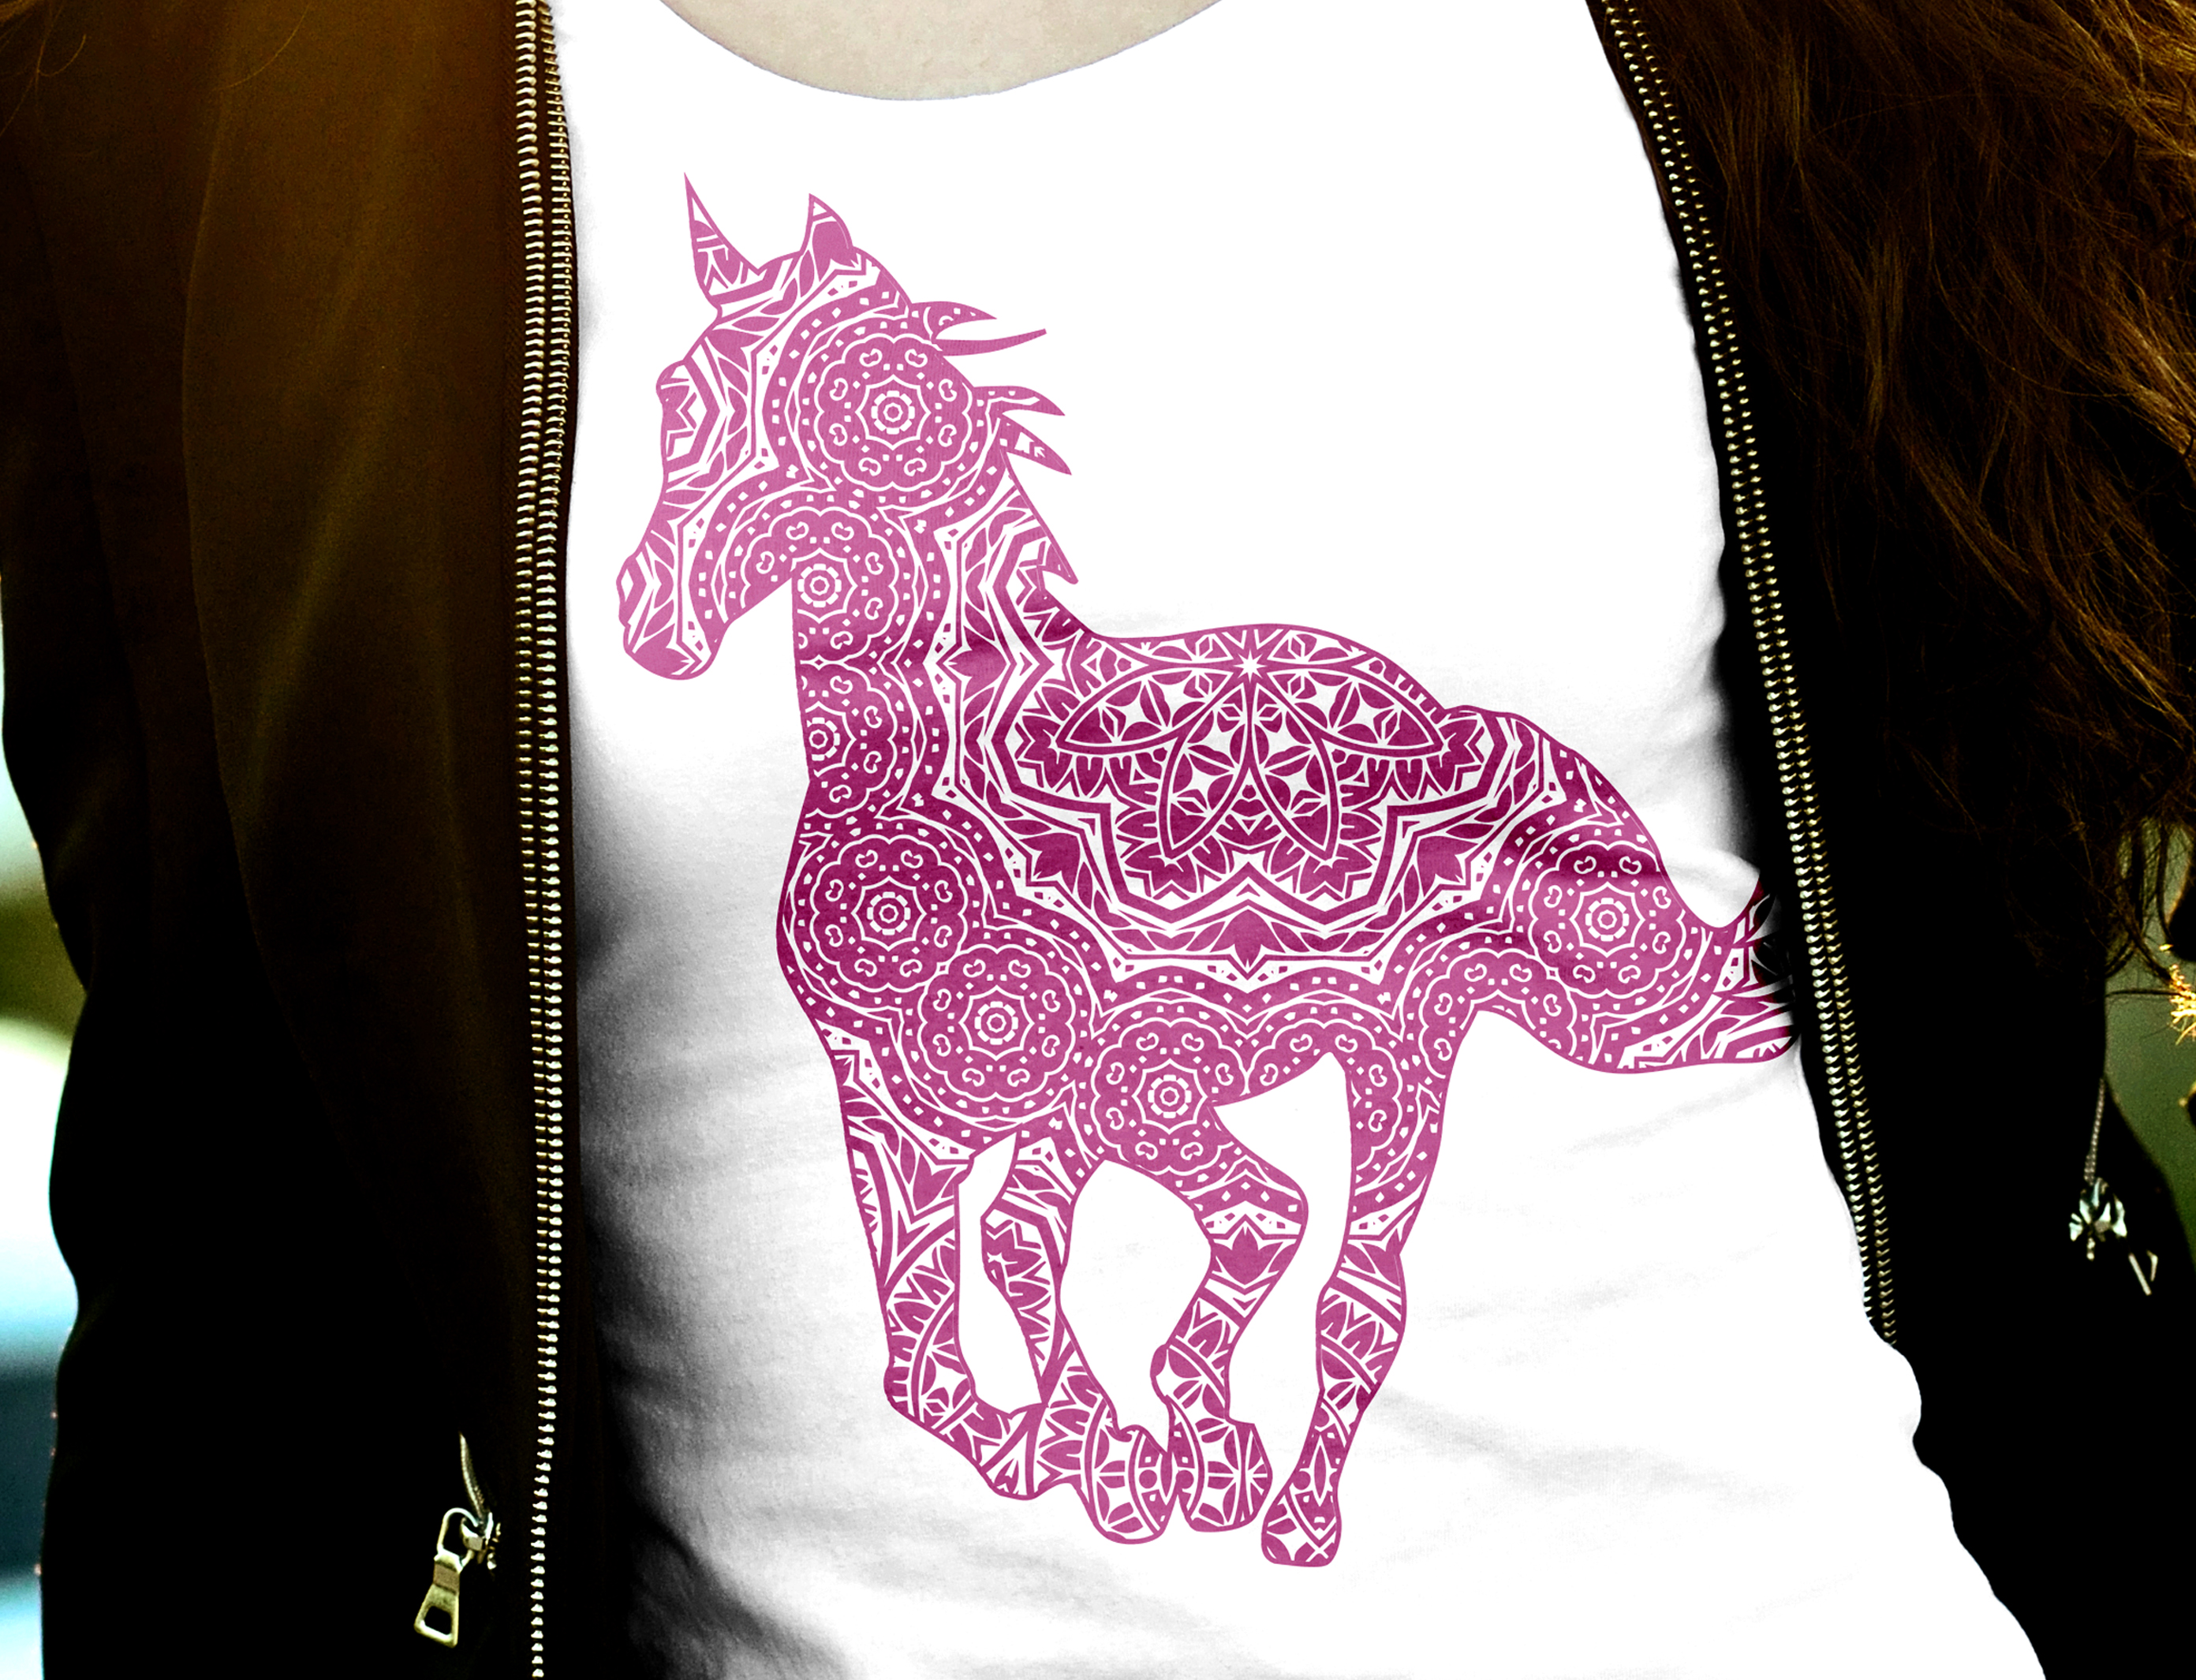 Download Horse Mandala Svg: 'HORSE SVG' Zentangle Horse Svg